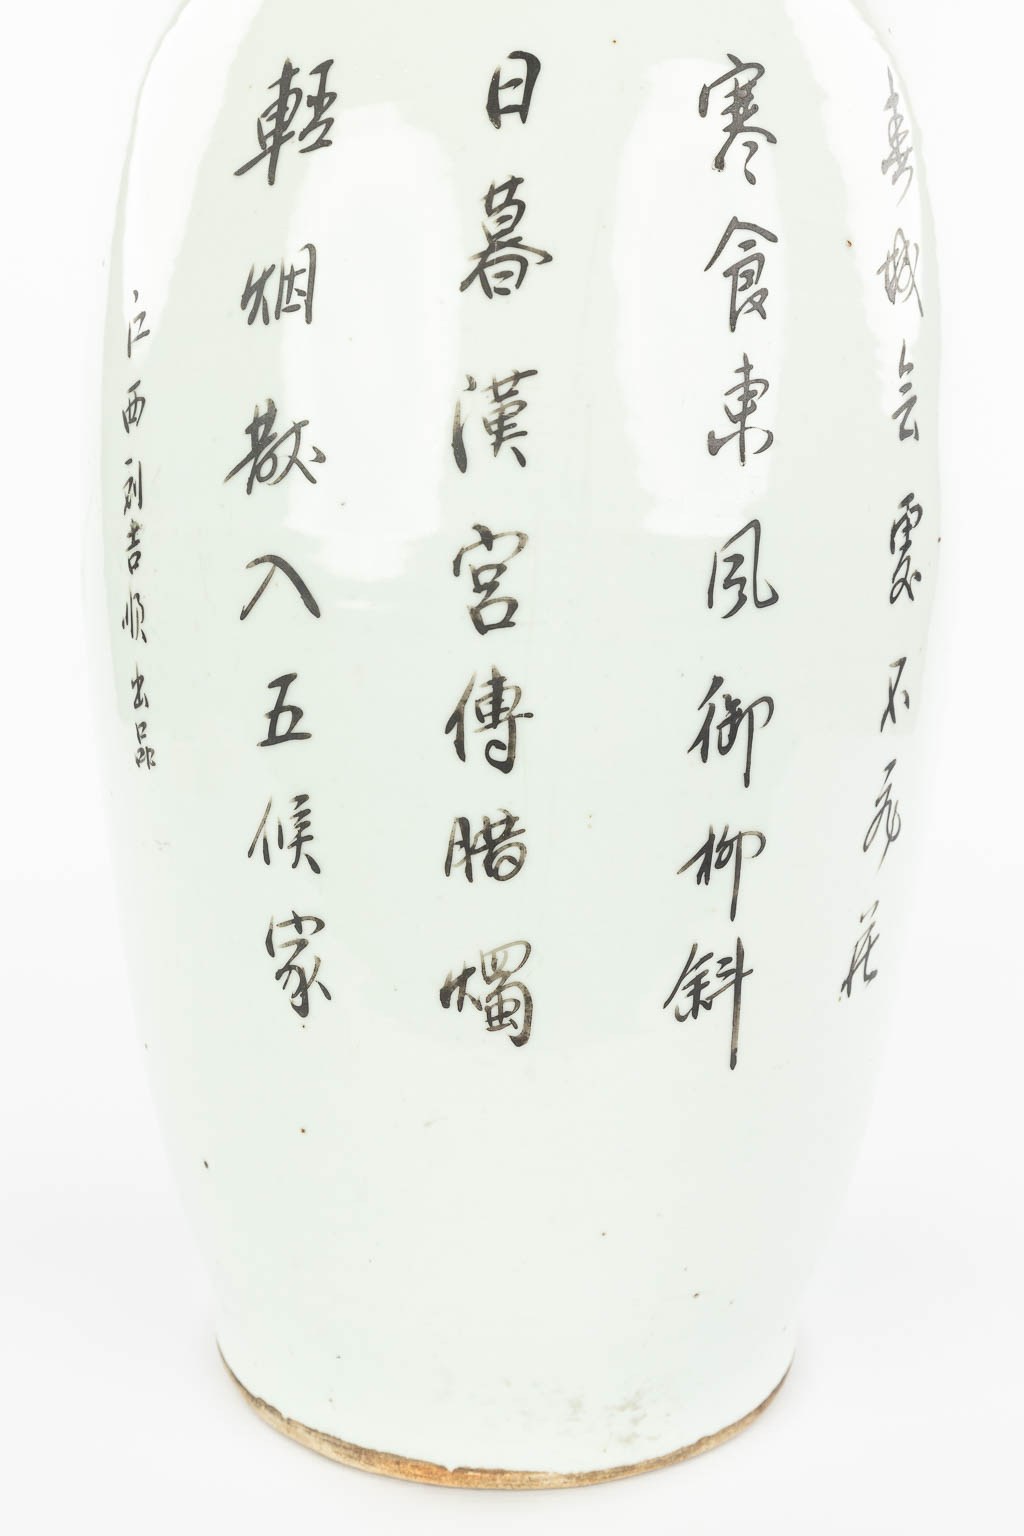 Een Chinese vaas gemaakt uit porselein en versierd met hofdames in de tuin. (H:57cm)